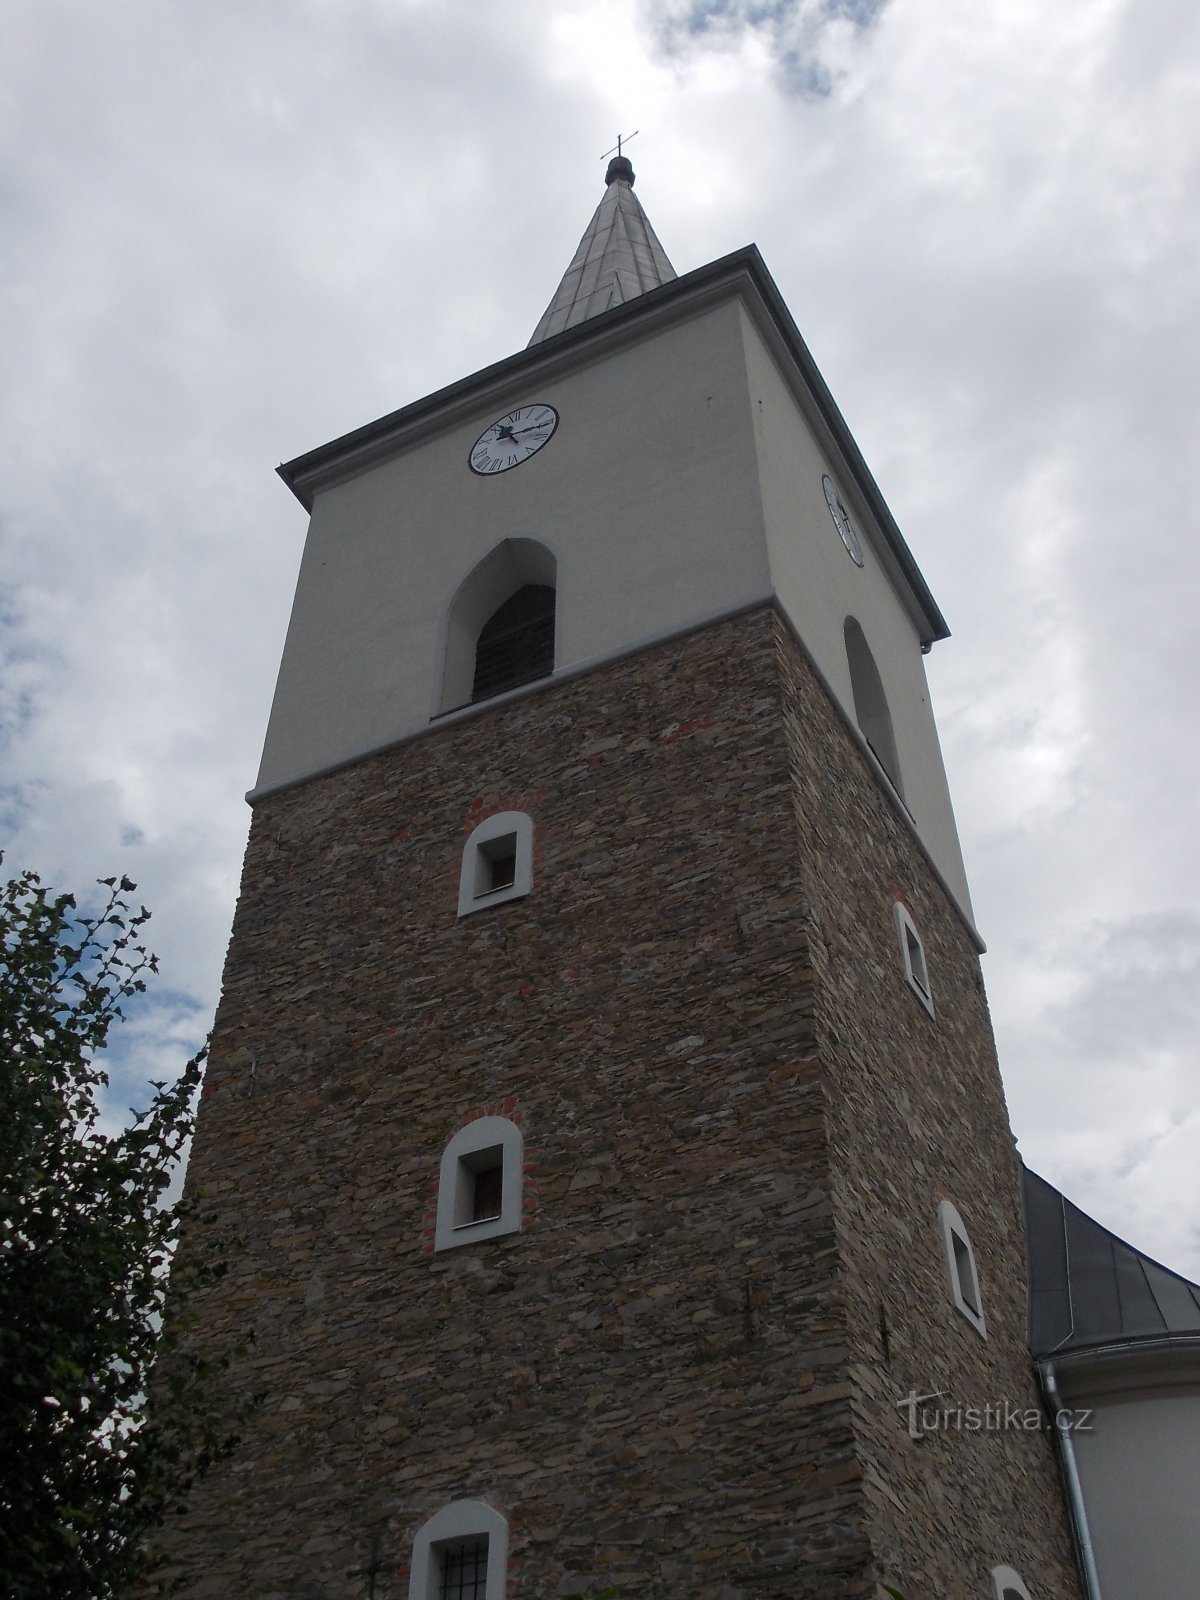 crkveni toranj